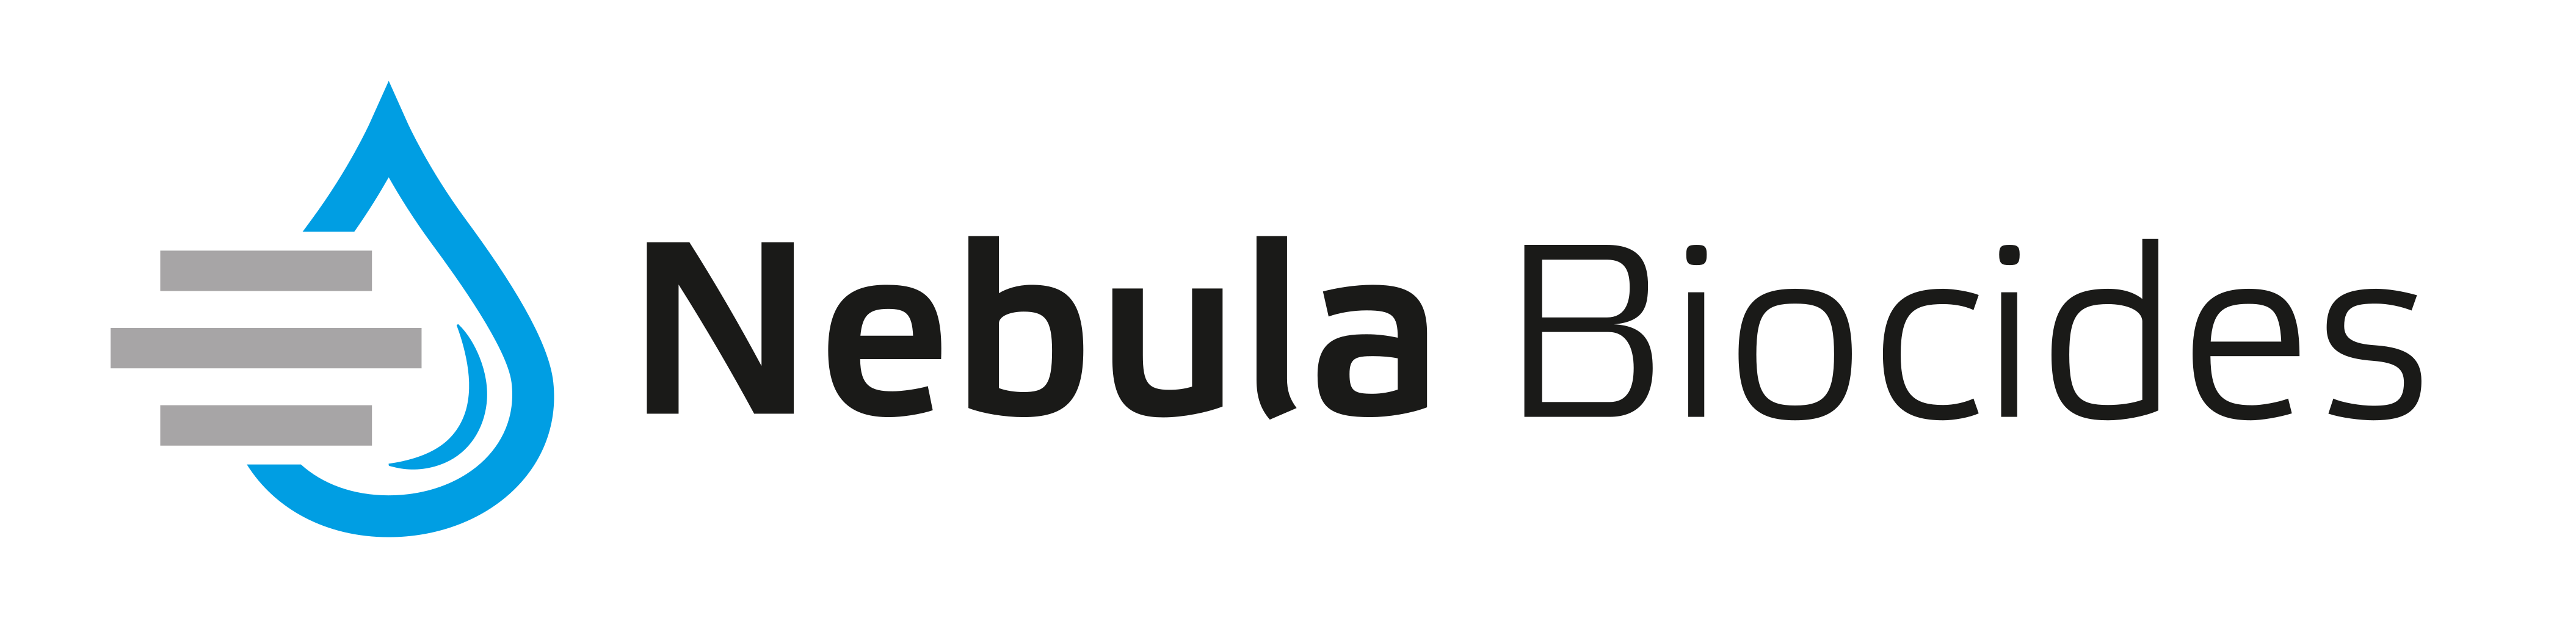 Nebula Biocides GmbH